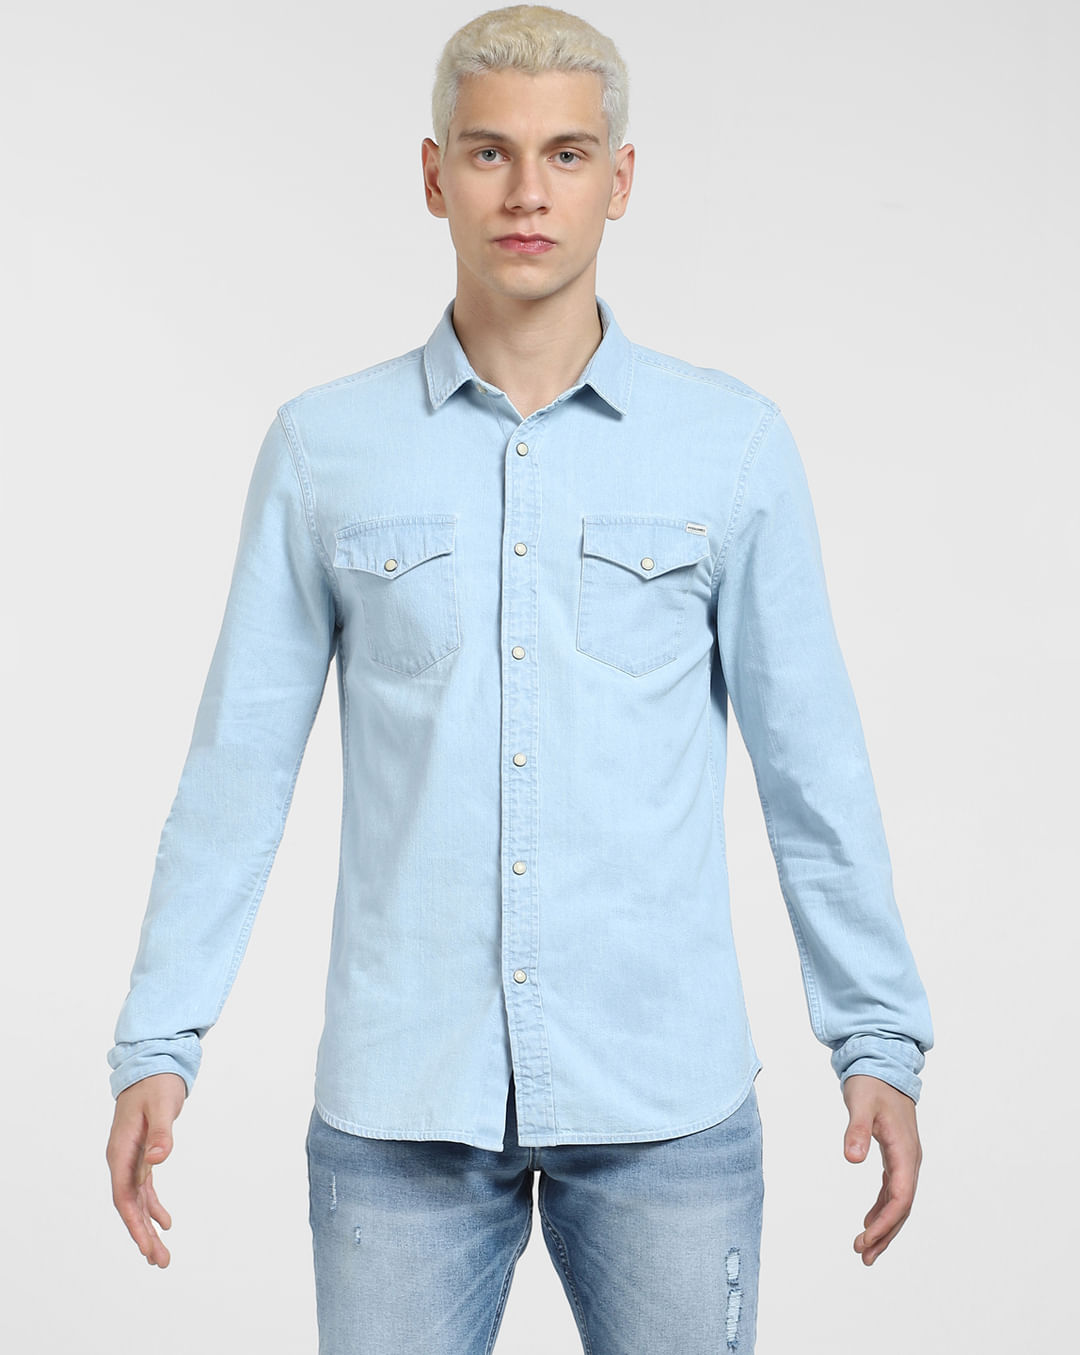 Buy Blue Denim Full Sleeves Shirt for Men